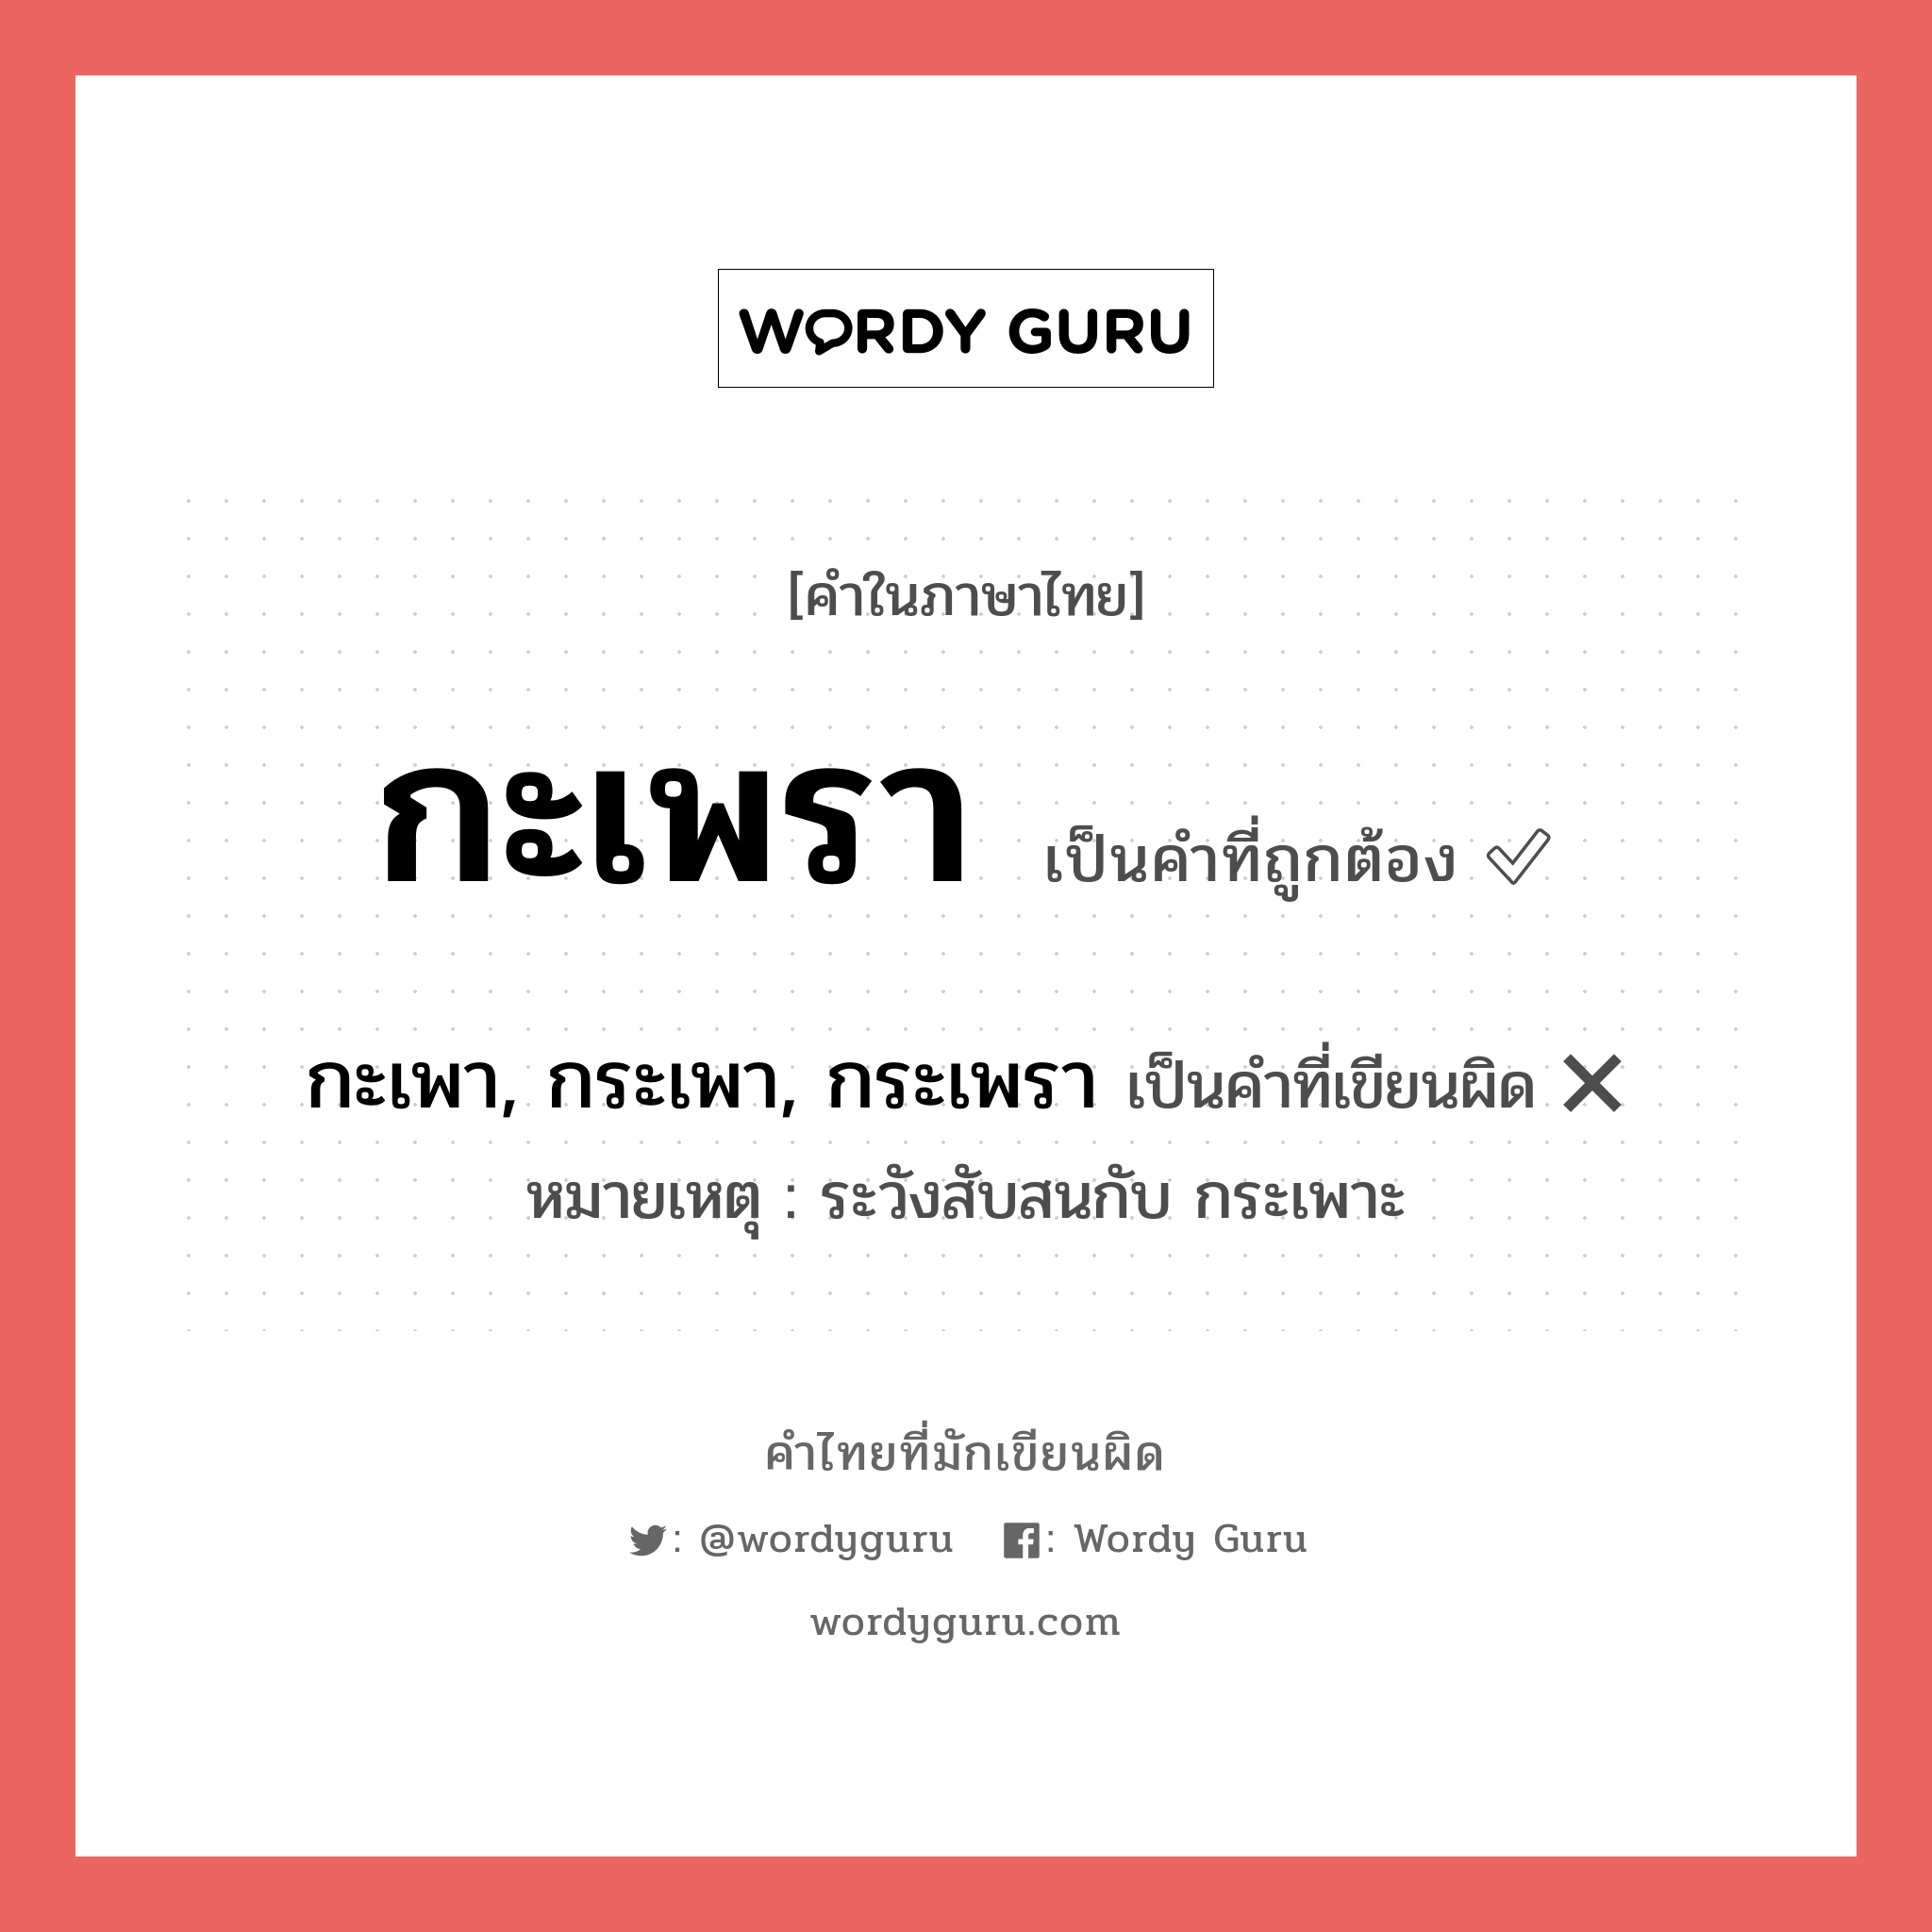 "กะเพรา" กับ "กะเพา, กระเพา, กระเพรา" เขียนอย่างไร คำไหนที่ถูกต้อง - คำไทยที่มักเขียนผิด